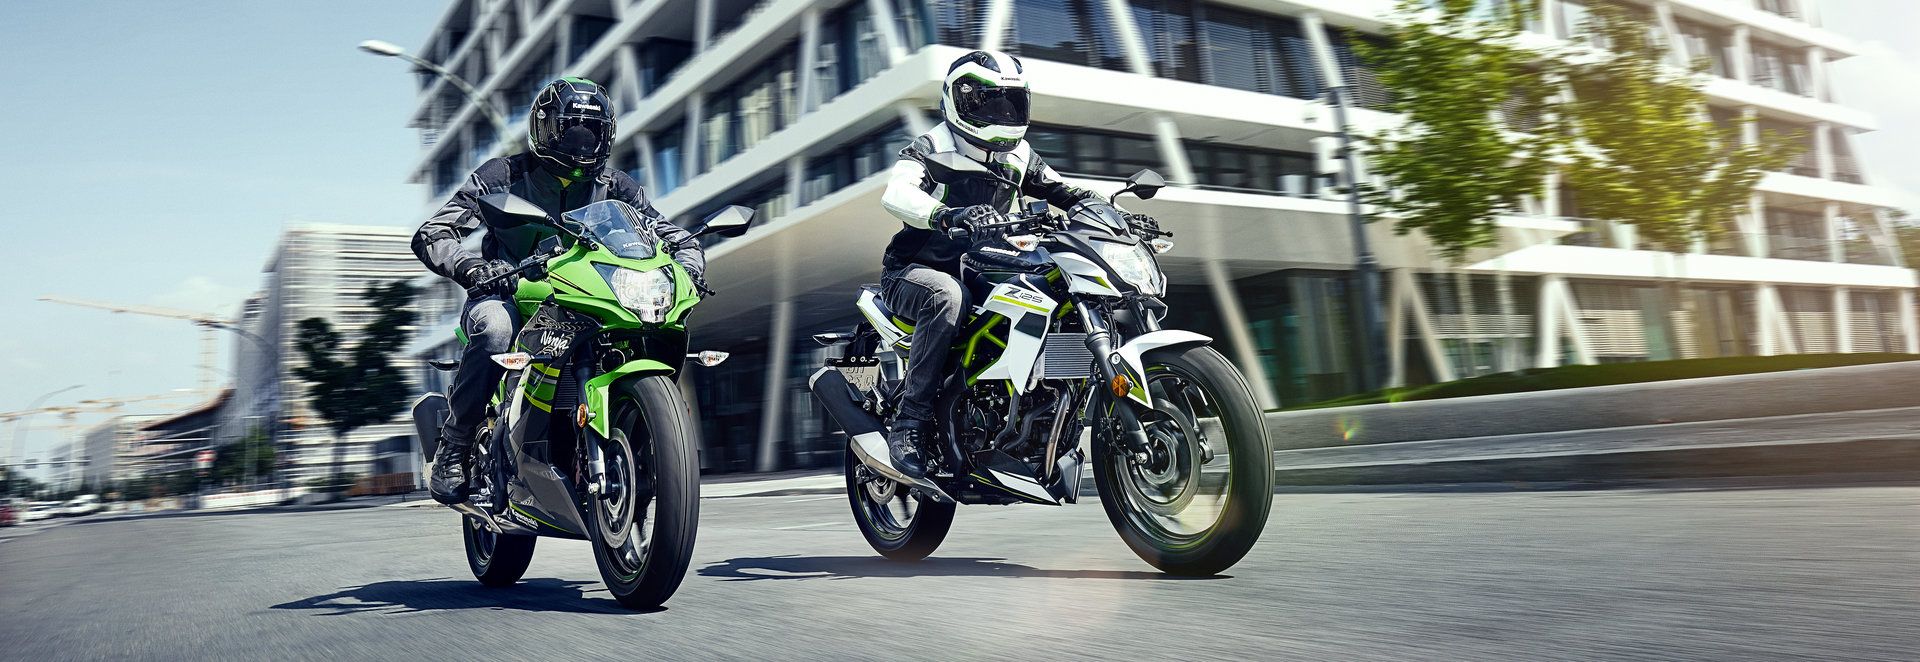 Kawasaki Ninja 125 y Z 125, deportividad a tu alcance